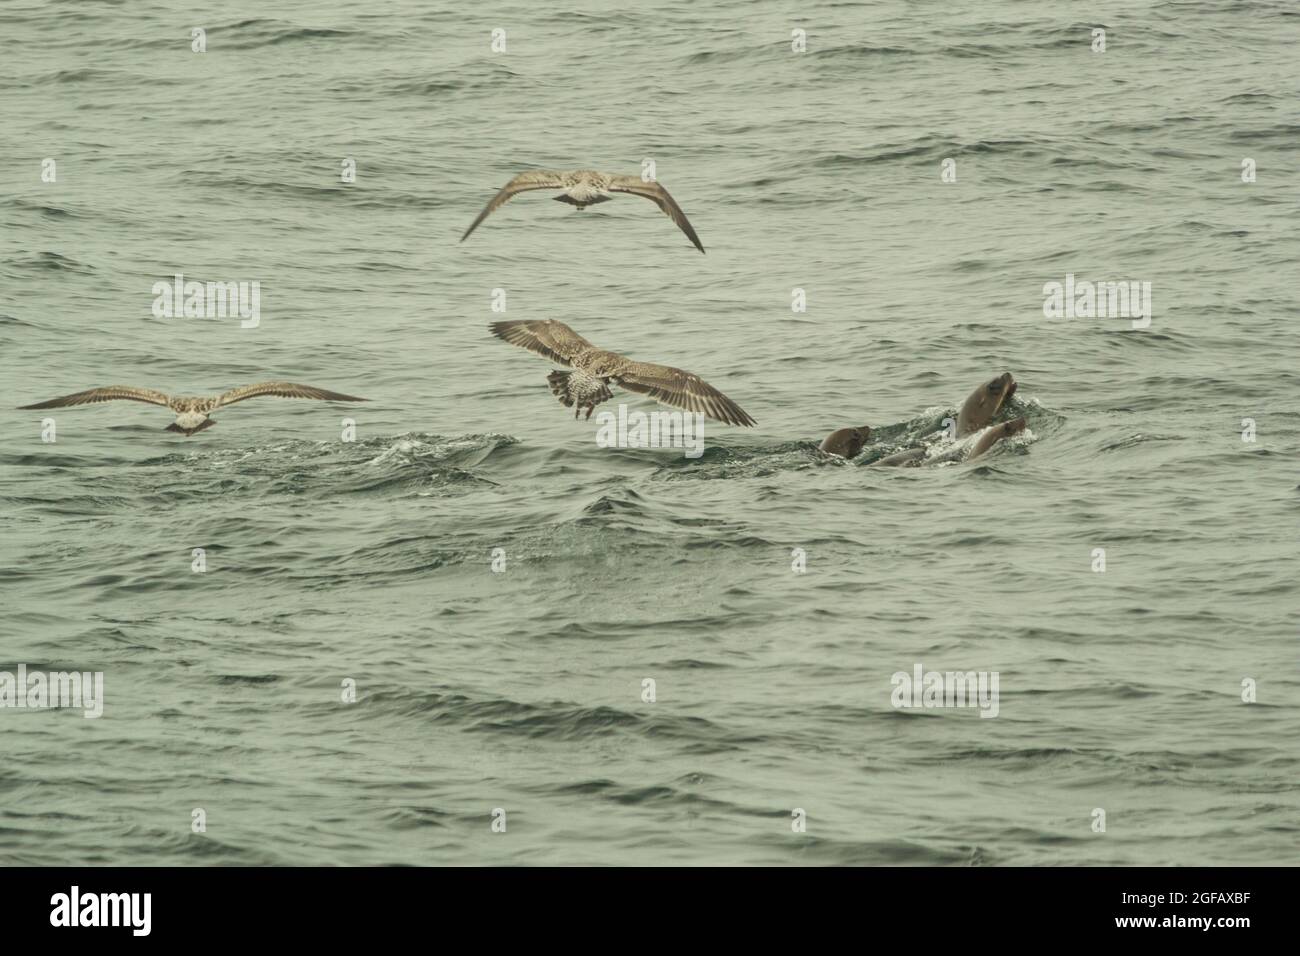 Les phoques à fourrure et les goélands qui se bousculaient autour des baleines à bosse se nourrissent. Banque D'Images